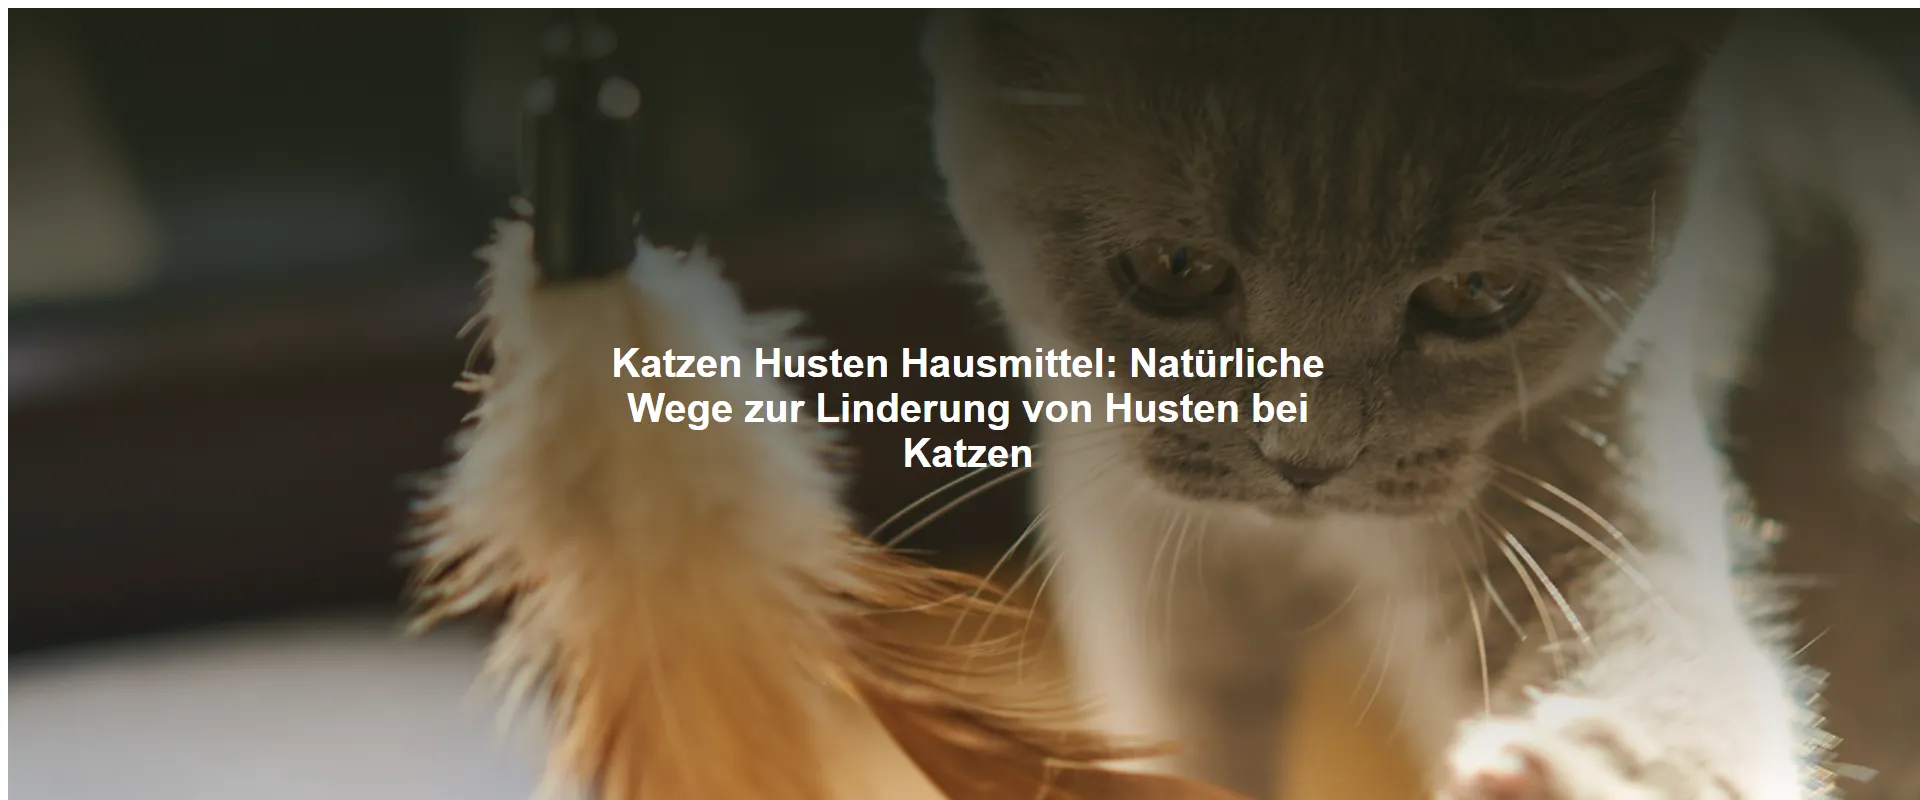 Katzen Husten Hausmittel – Natürliche Wege zur Linderung von Husten bei Katzen